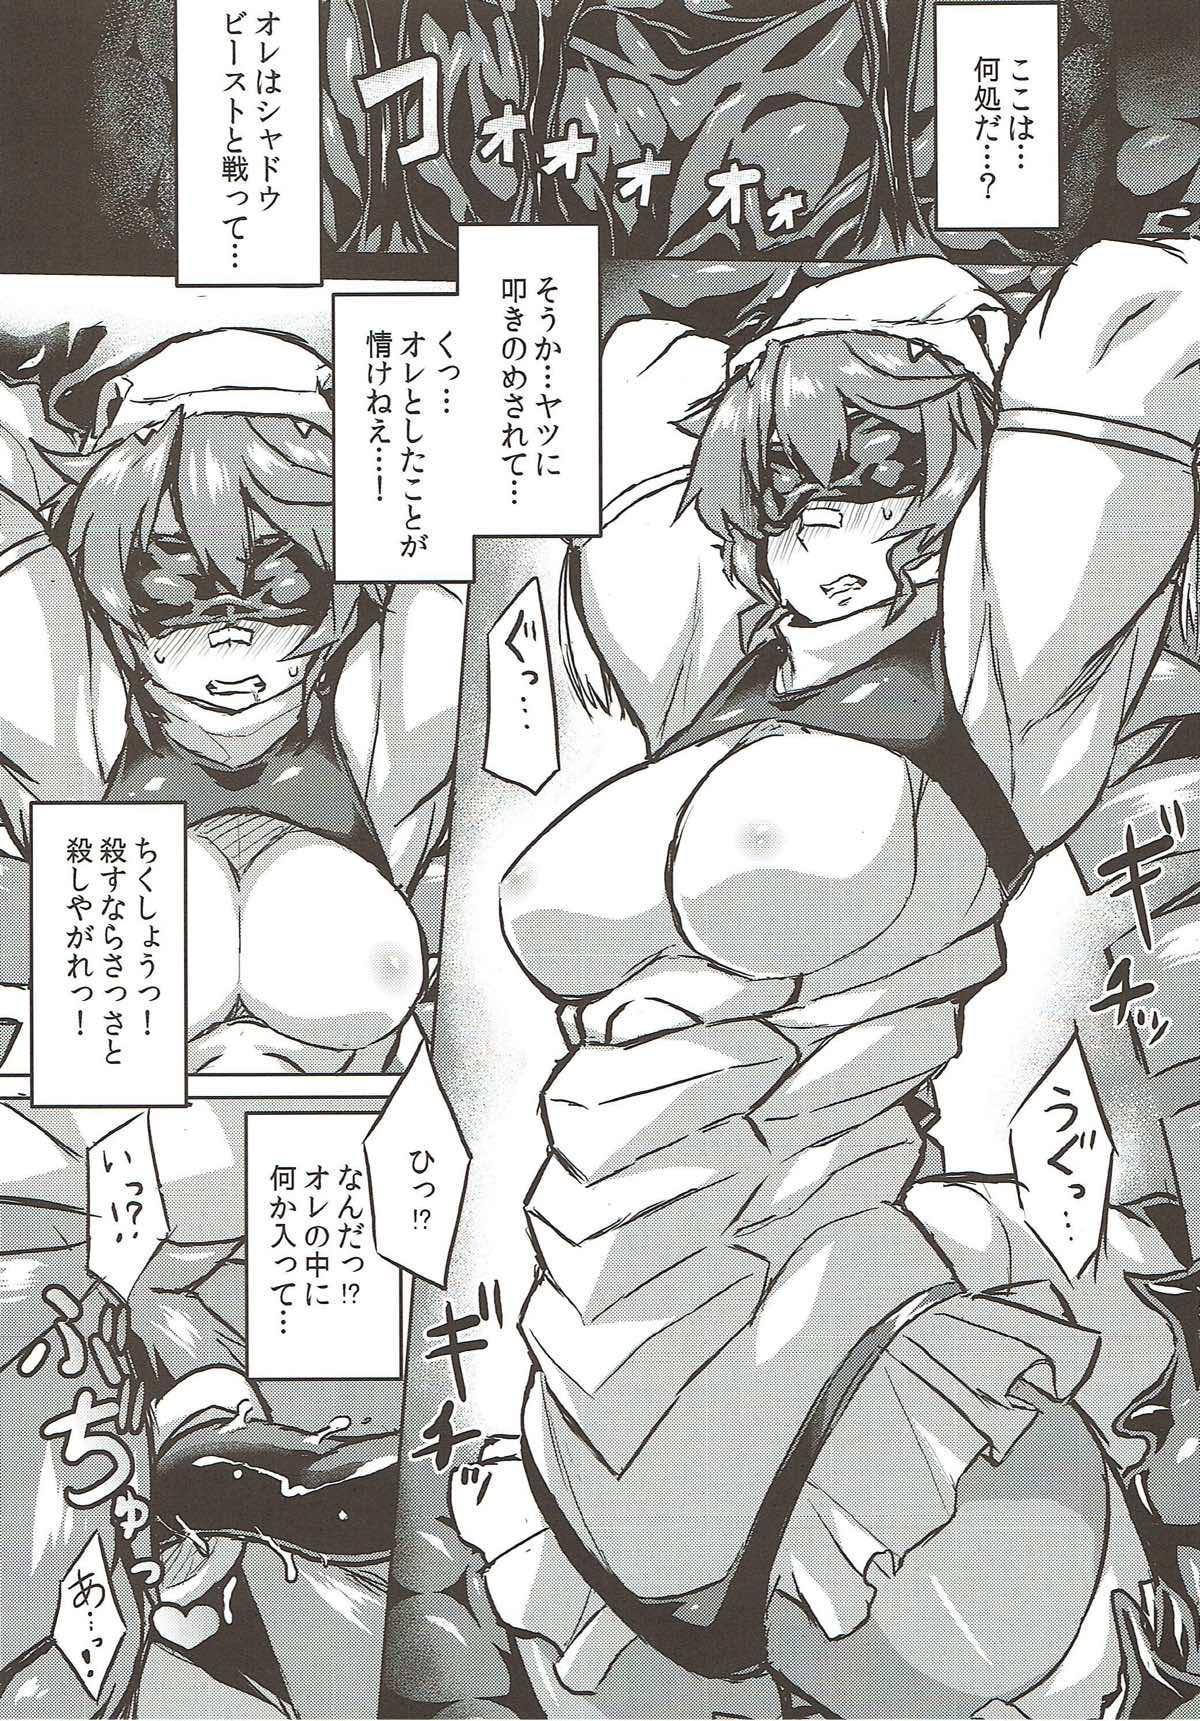 Orgia Osoreteita Red King Senpai no Haiboku Sengen - Kaiju girls Bus - Page 3